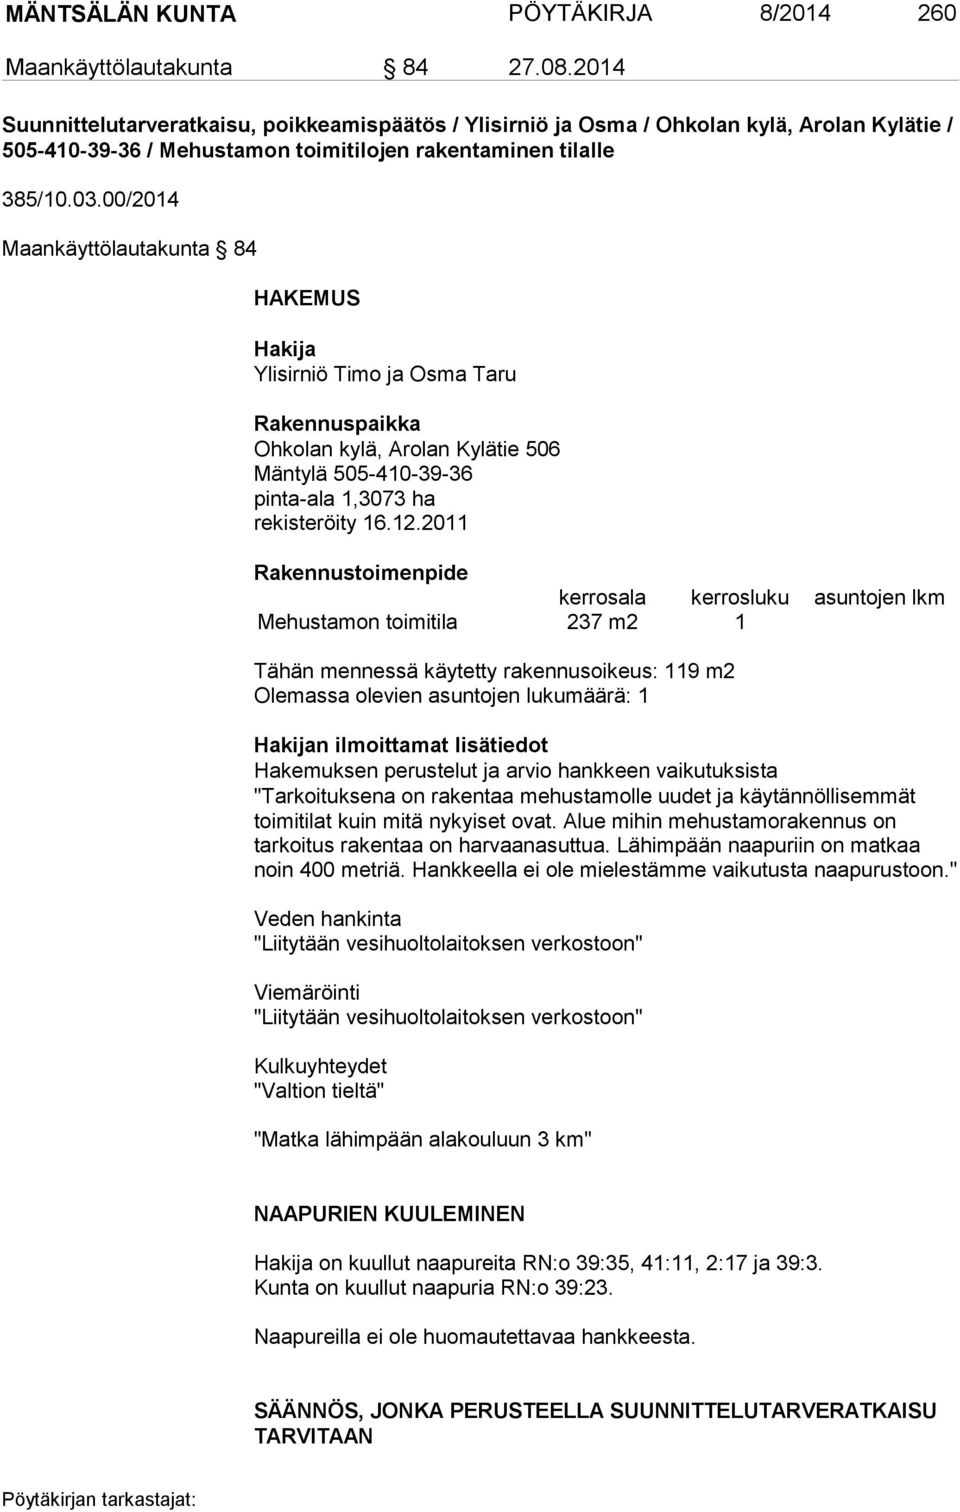 00/2014 Maankäyttölautakunta 84 HAKEMUS Hakija Ylisirniö Timo ja Osma Taru Rakennuspaikka Ohkolan kylä, Arolan Kylätie 506 Mäntylä 505-410-39-36 pinta-ala 1,3073 ha rekisteröity 16.12.